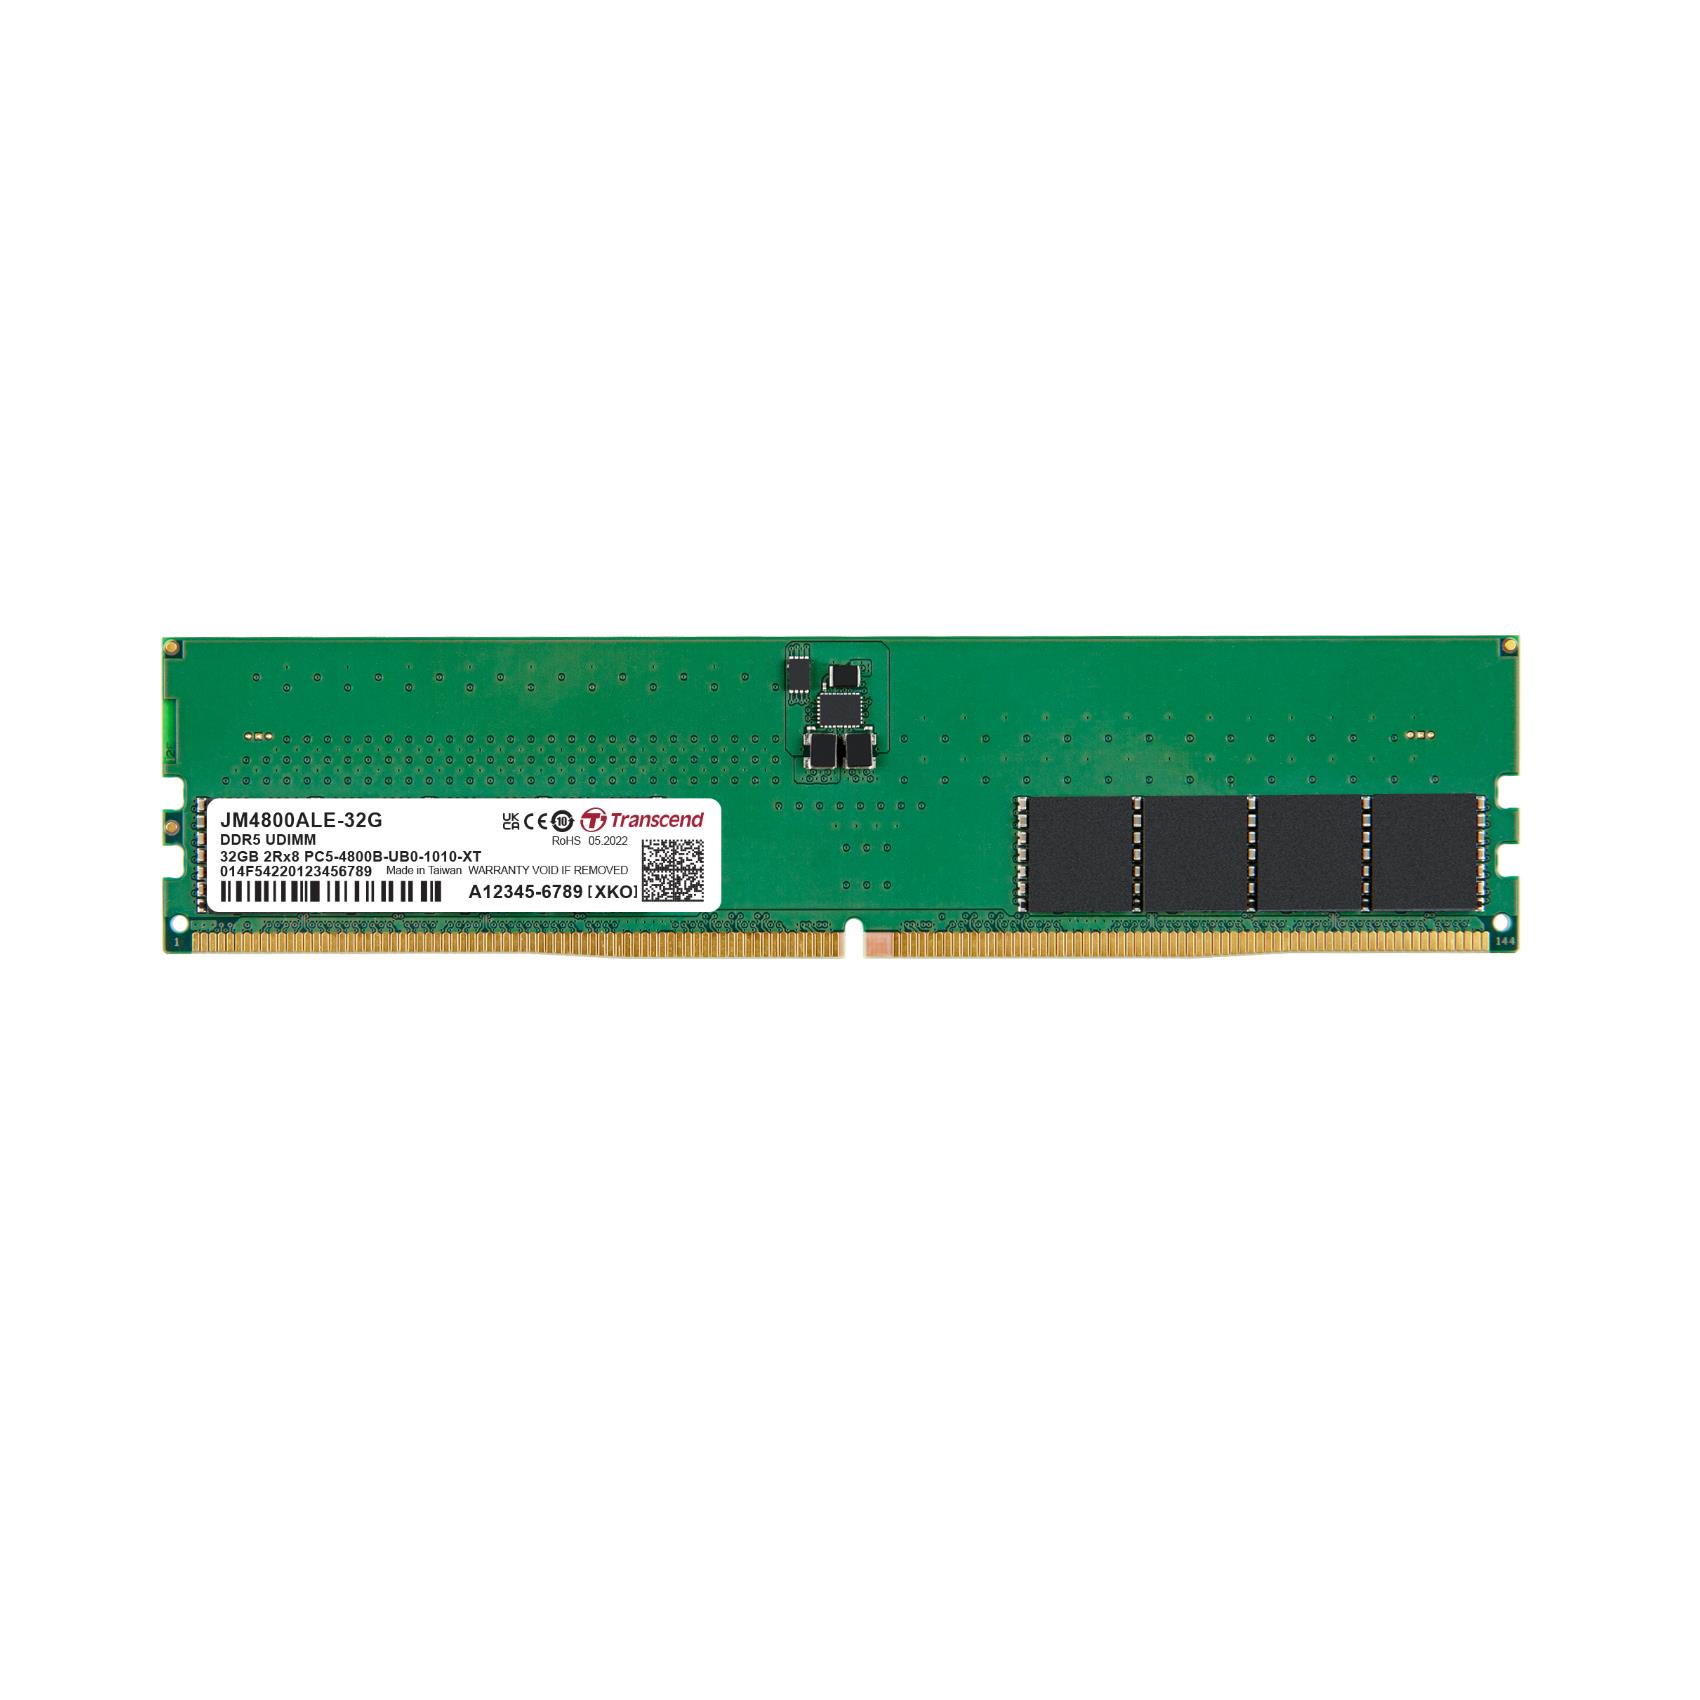 32GB JM DDR5 4800 U-DIMM 2RX8 2GX8